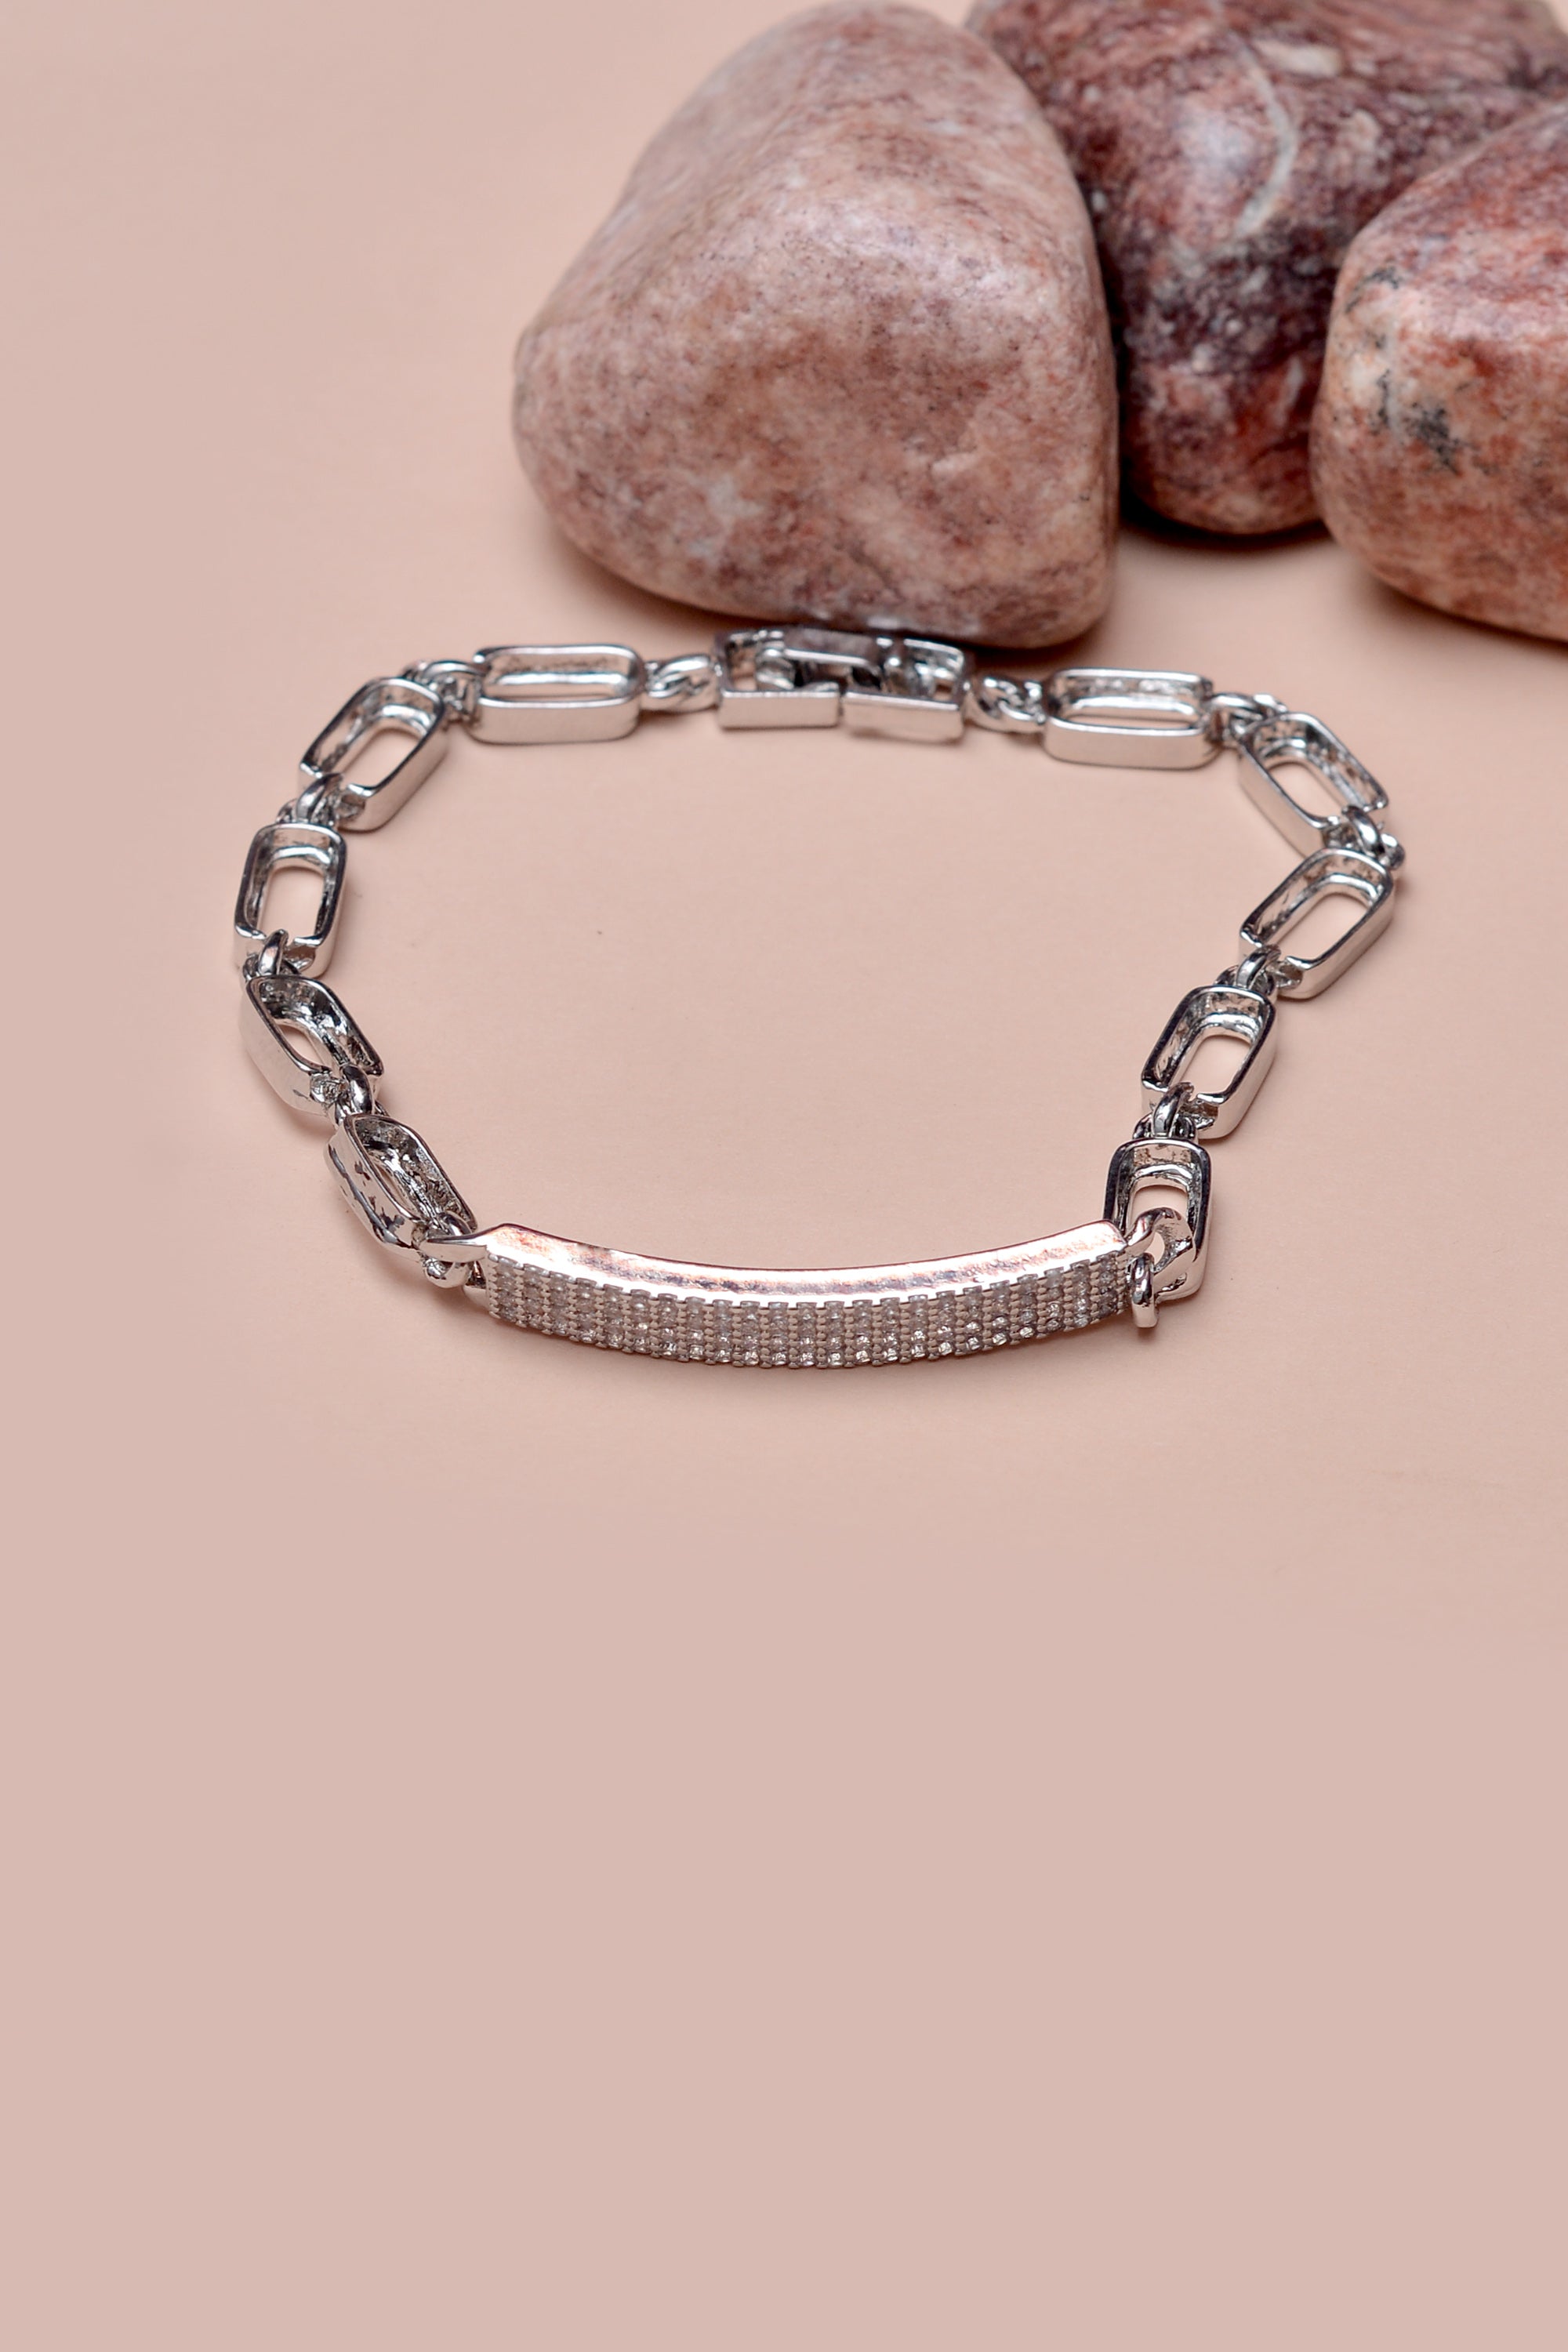 Daily Wear Silver Bracelet